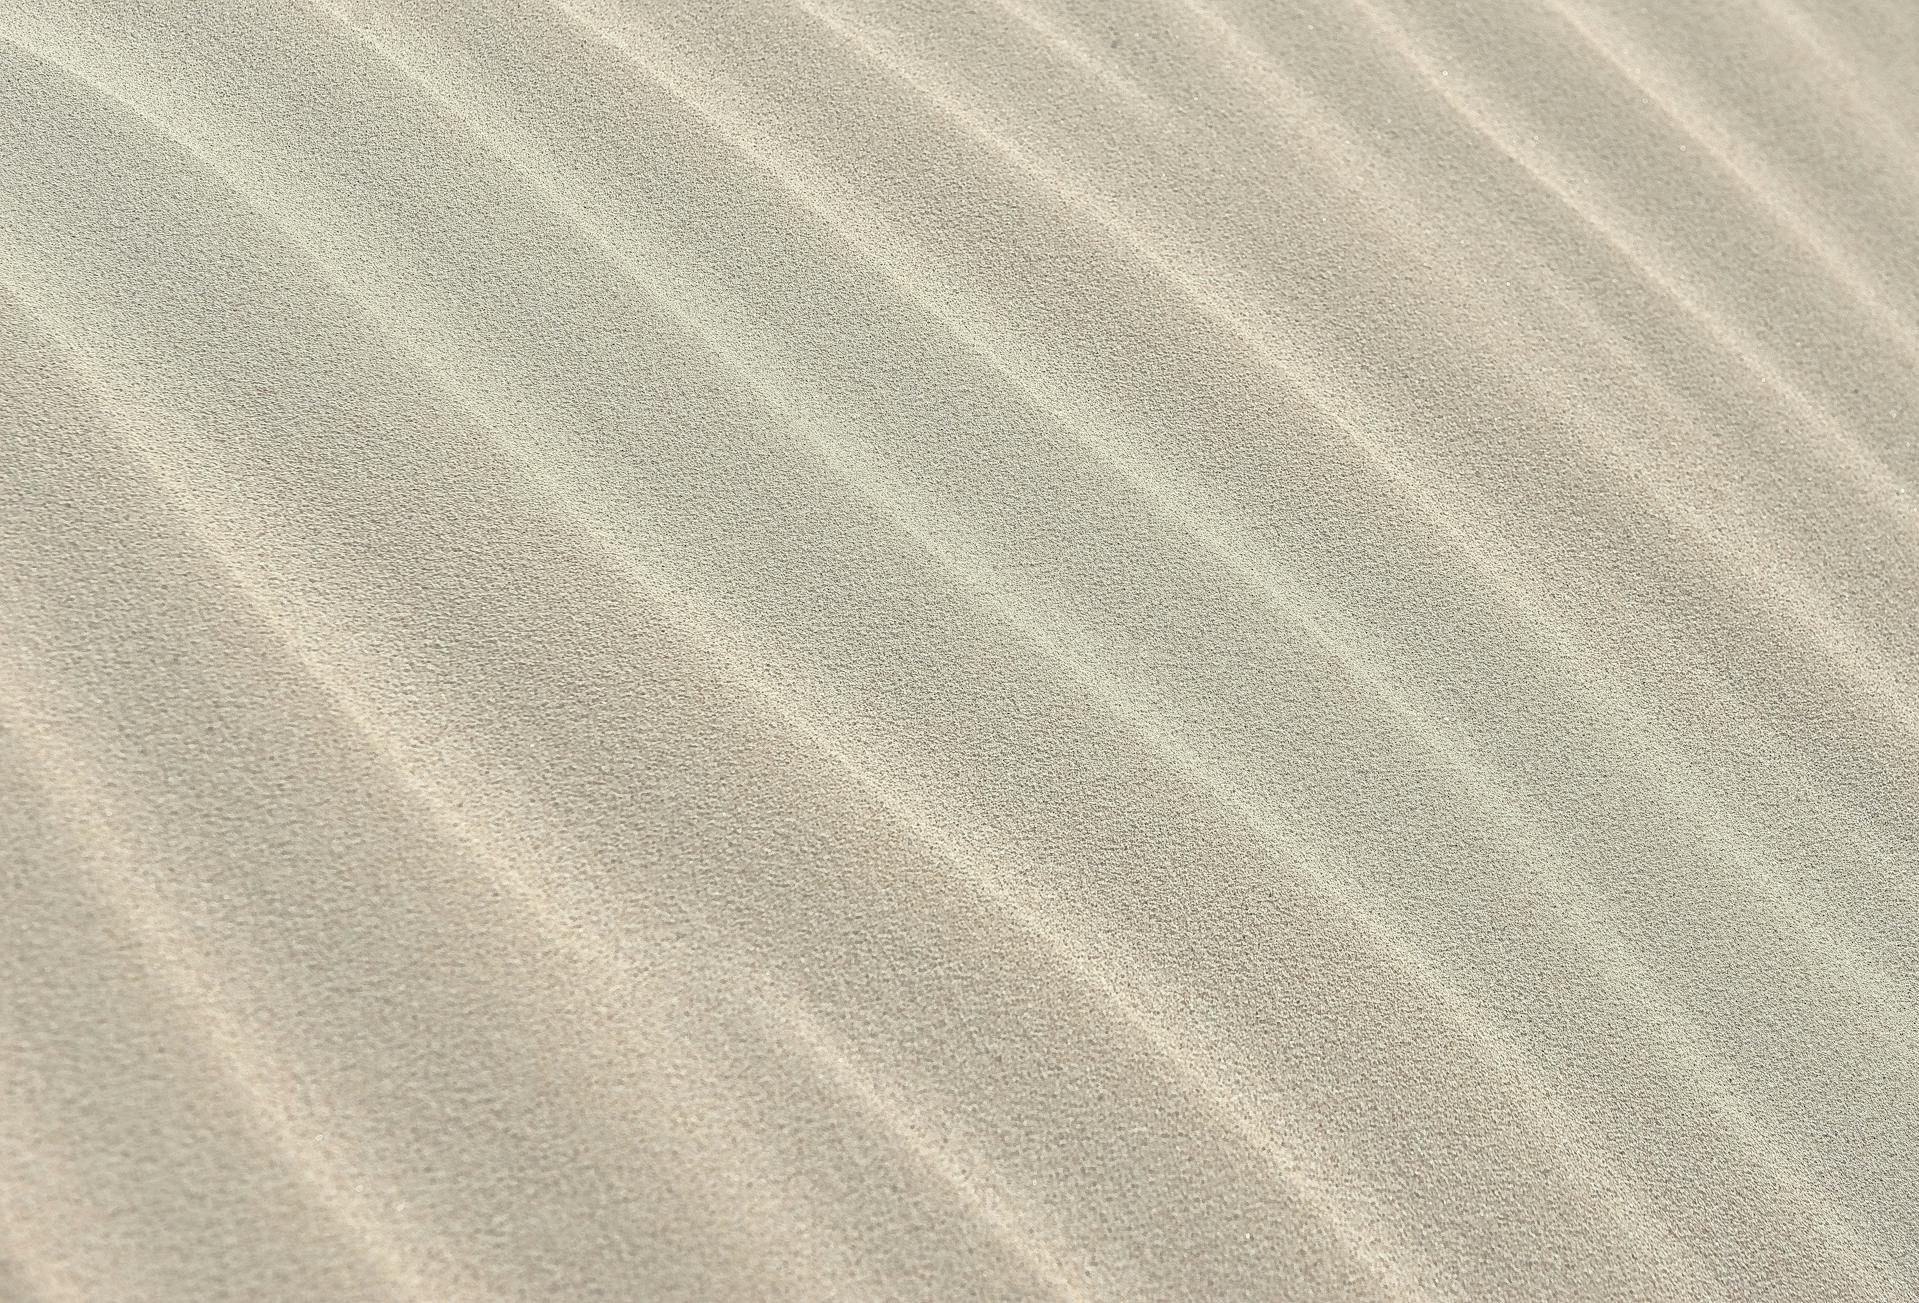 Las ondulaciones son estructuras sedimentarias que se forman por la acción de una corriente de agua o viento sobre un sustrato de arena suelta. Foto: Pixabay/Pexels.